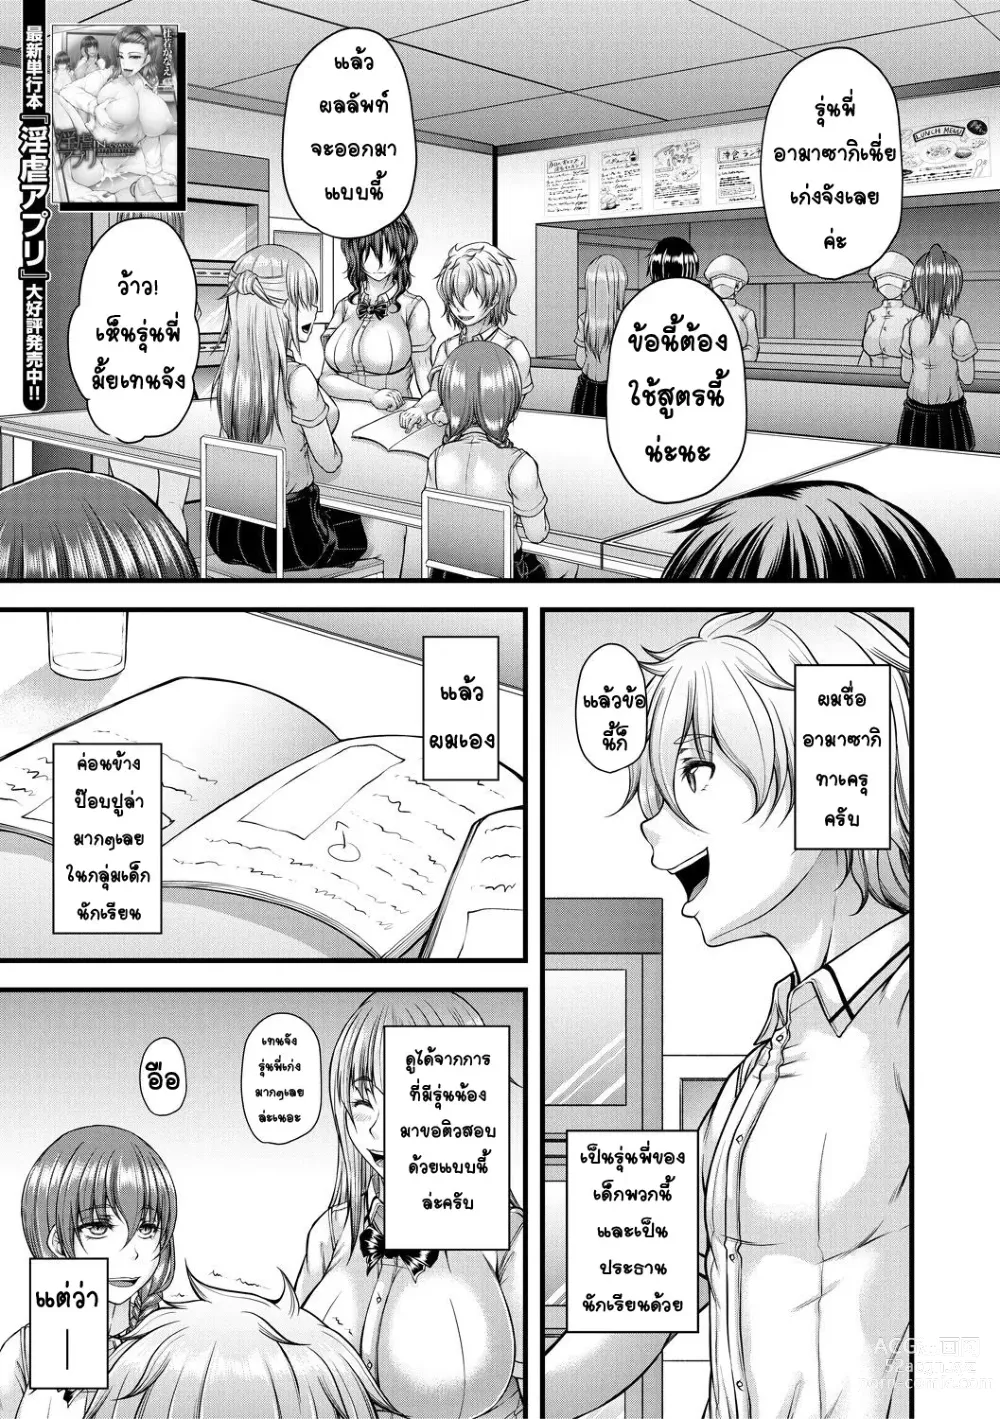 Page 1 of manga kakitsubata Kanae yoru onna ryushi wa han me rarenai 1